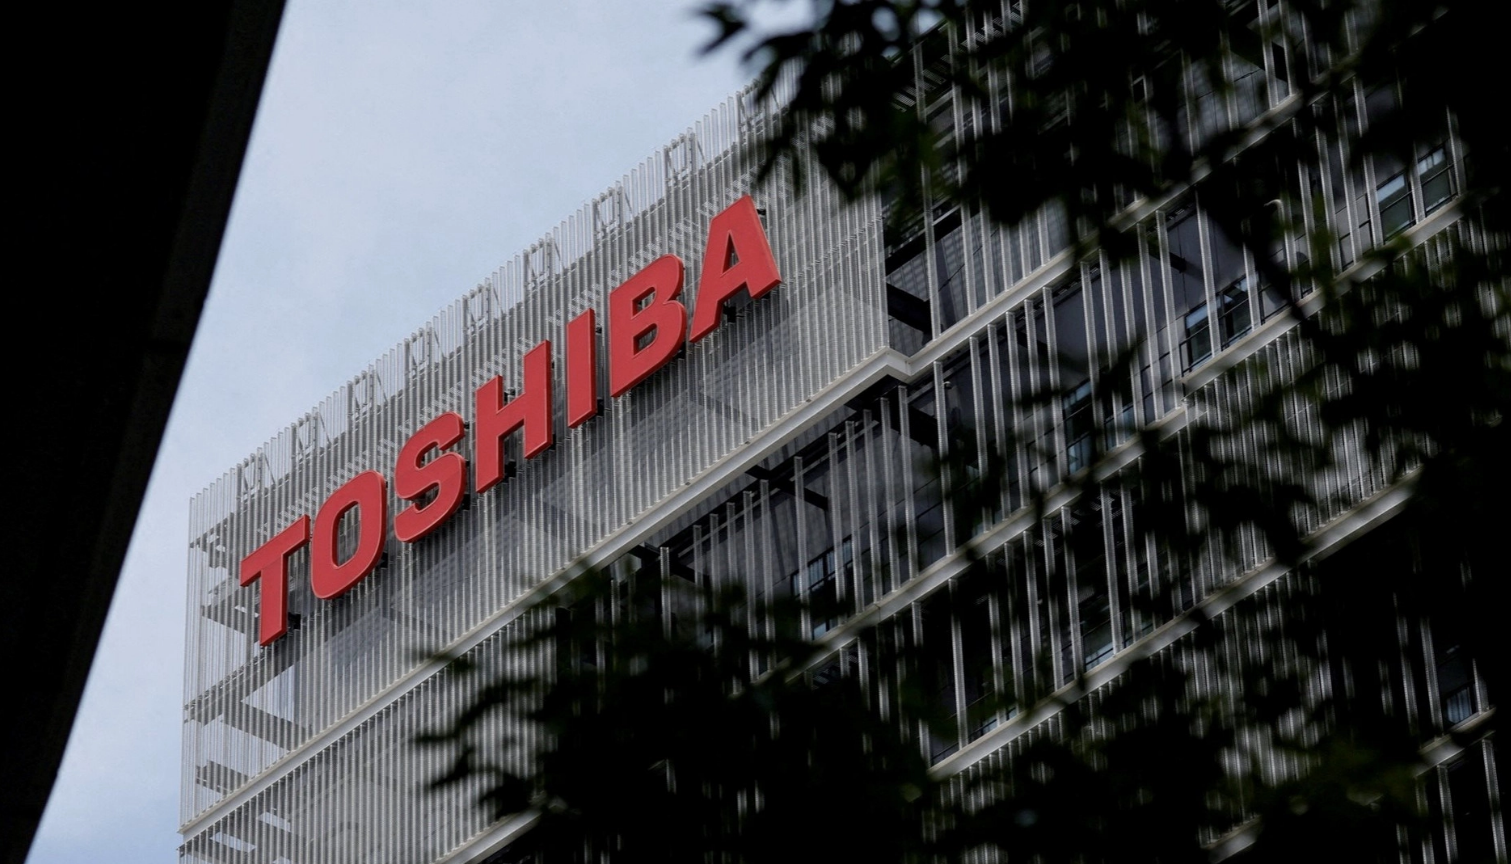 
Theo tuyên bố hôm 23/3, HĐQT Toshiba cho biết đã duyệt đề nghị của một nhóm doanh nghiệp được đứng đầu bởi Japan Industrial Partners (JIP)
